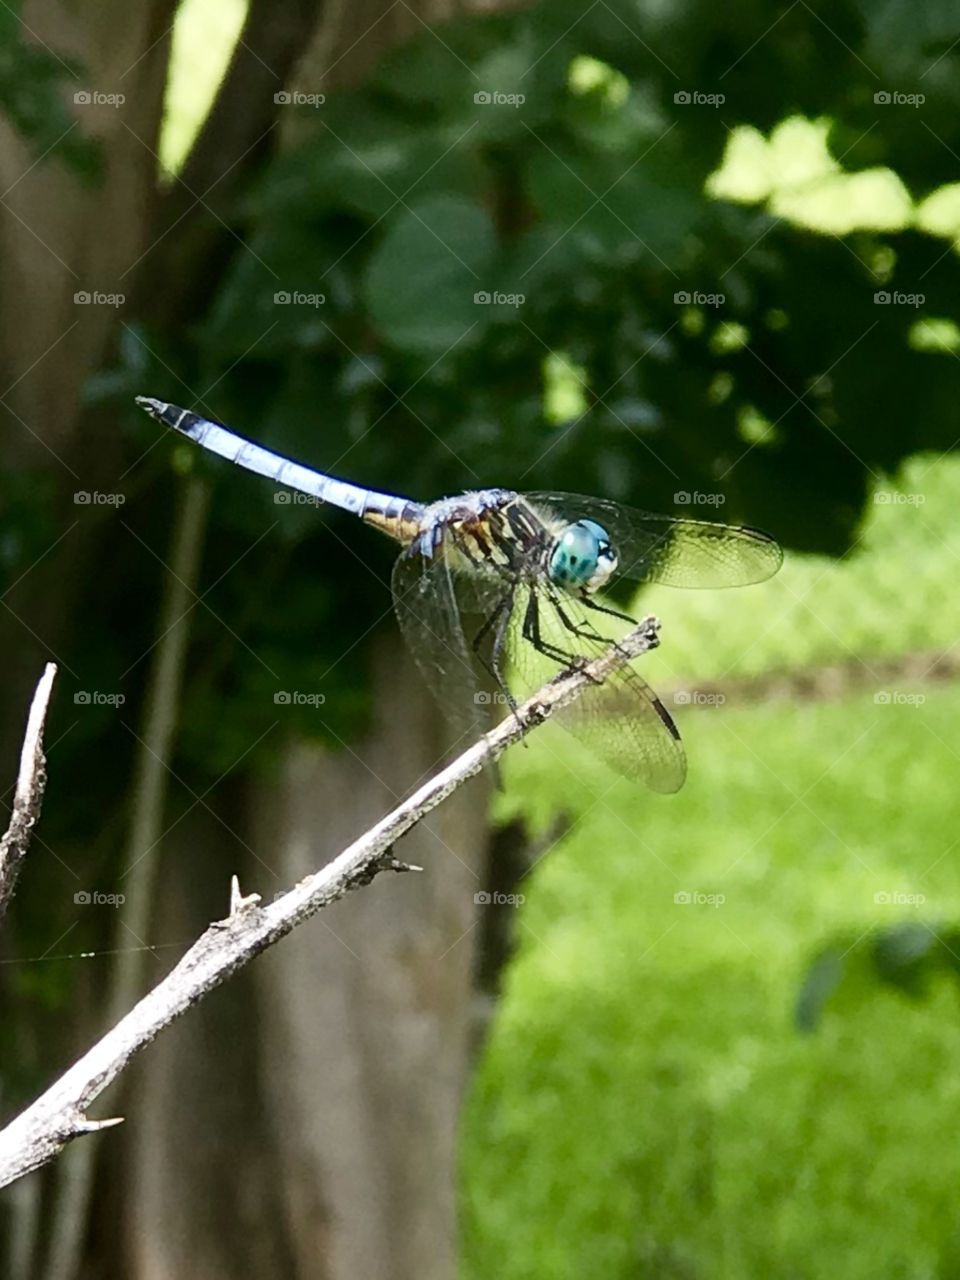 Dragonfly enjoying summer